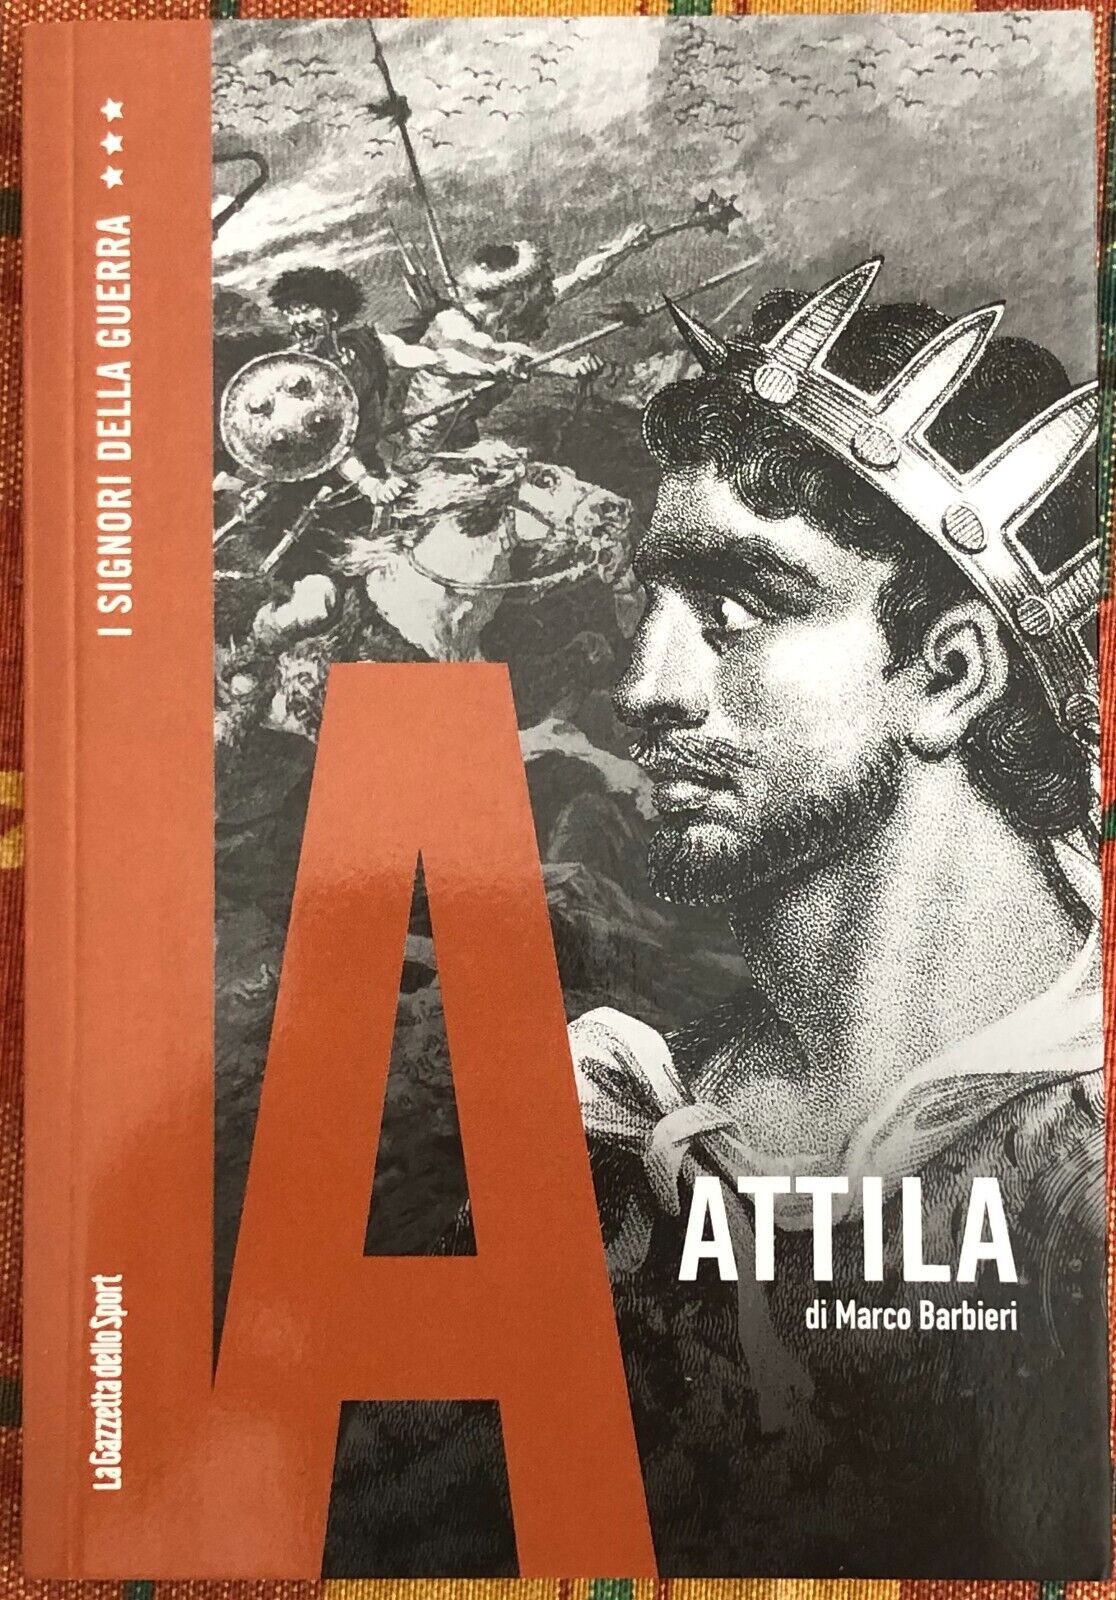  I signori della guerra n. 18 - Attila di Marco Barbieri, 2021, La Gazzetta D